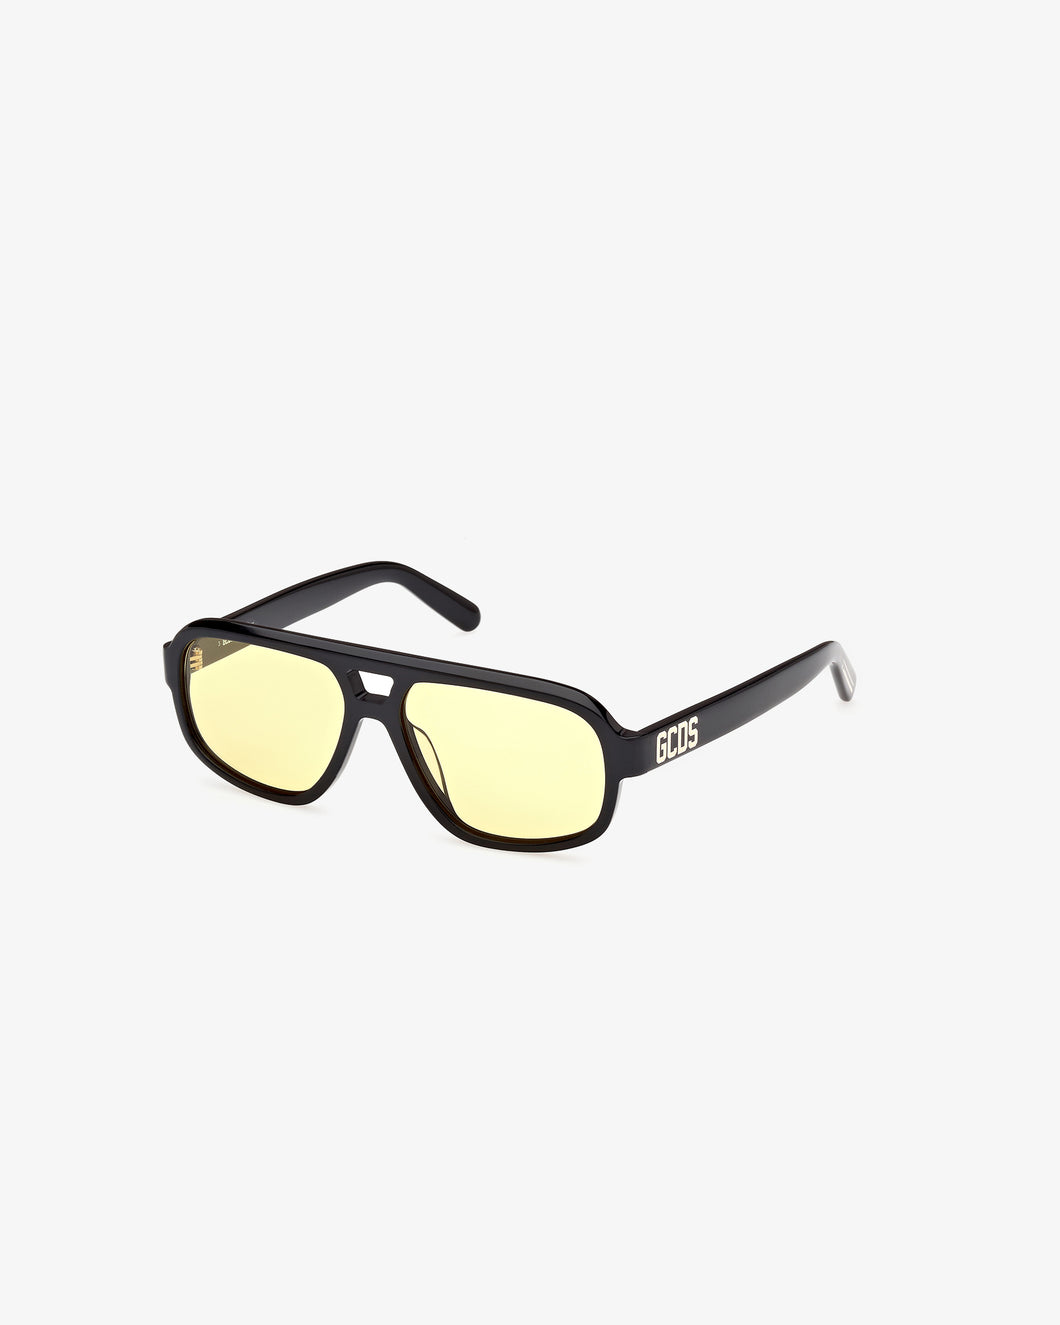 GD0046 Aviator Sunglasses